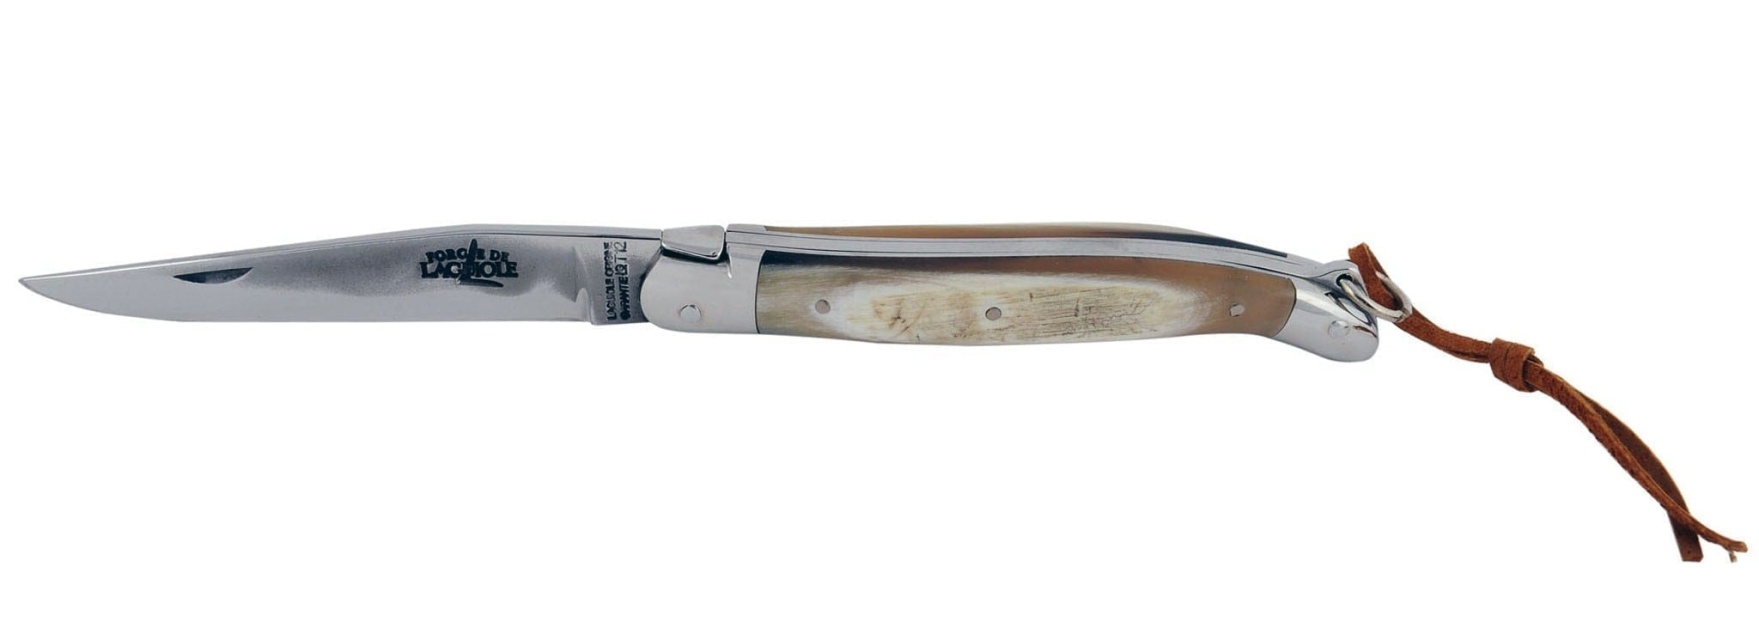 Madkniv med foldeblad - skaft i kohorn